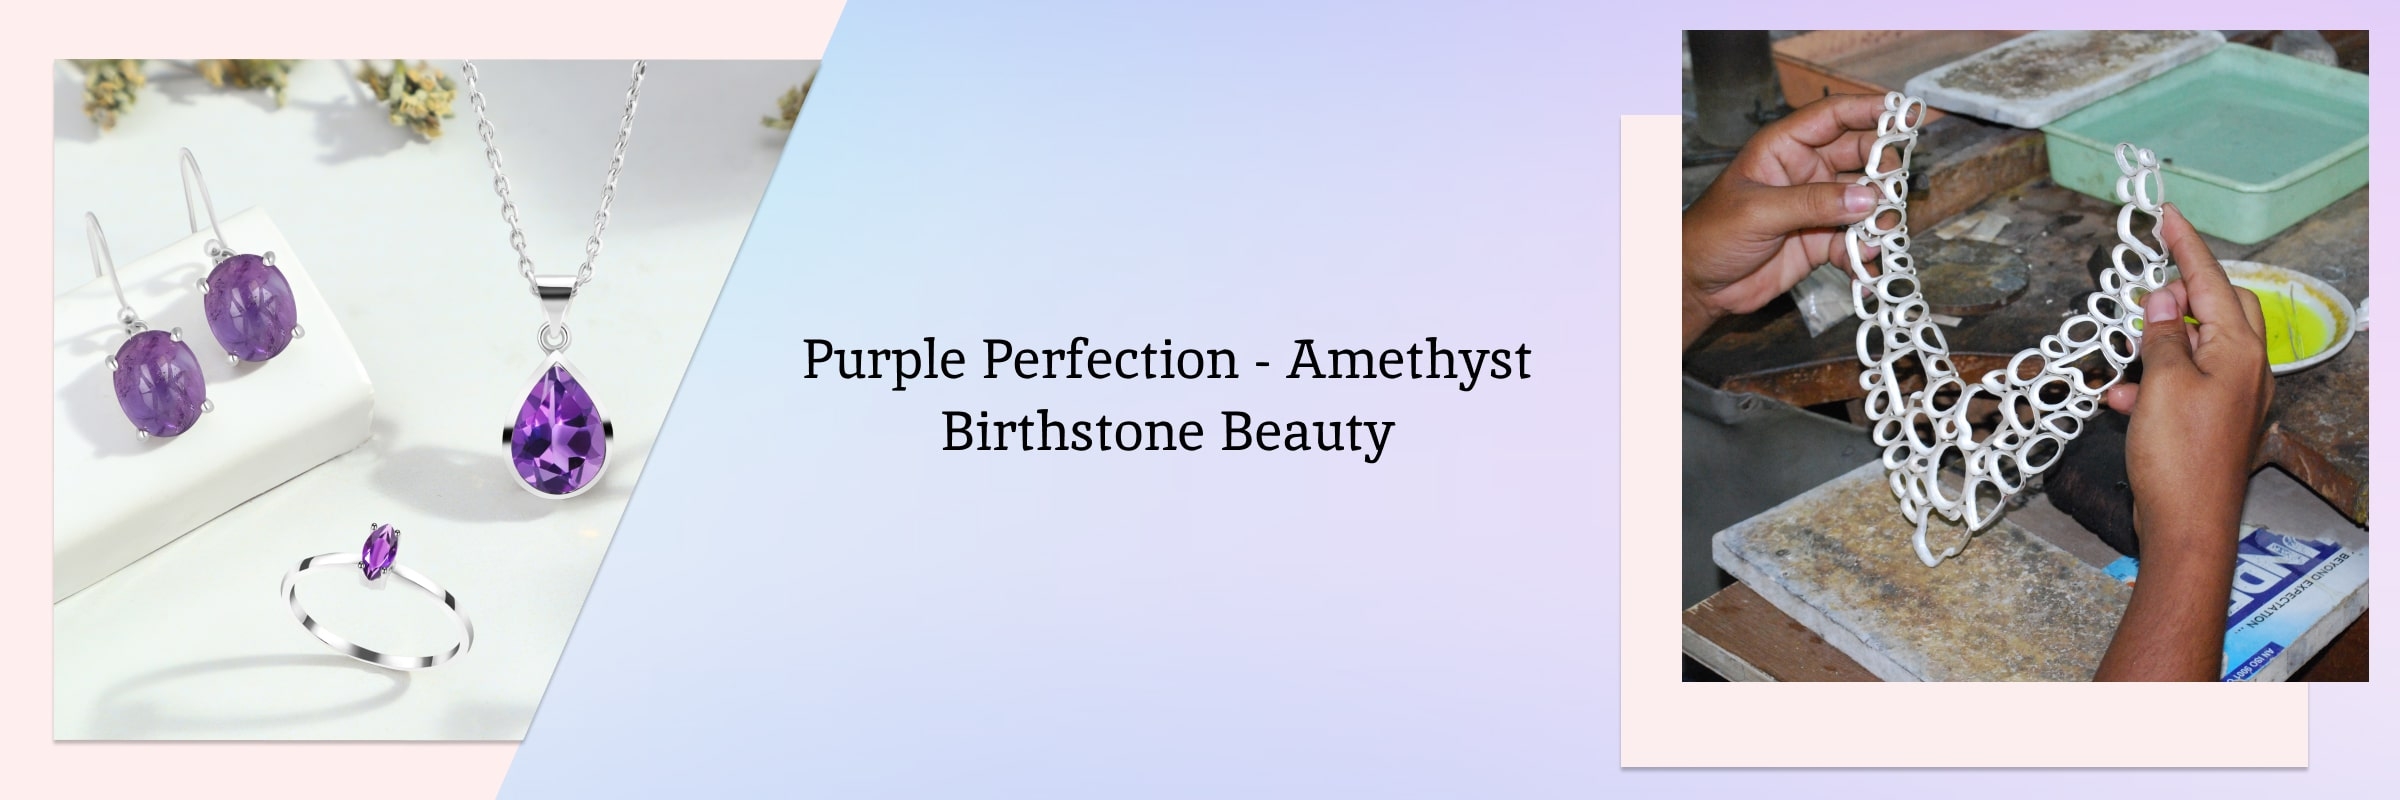 Amethyst: The Beautiful February Birthstone